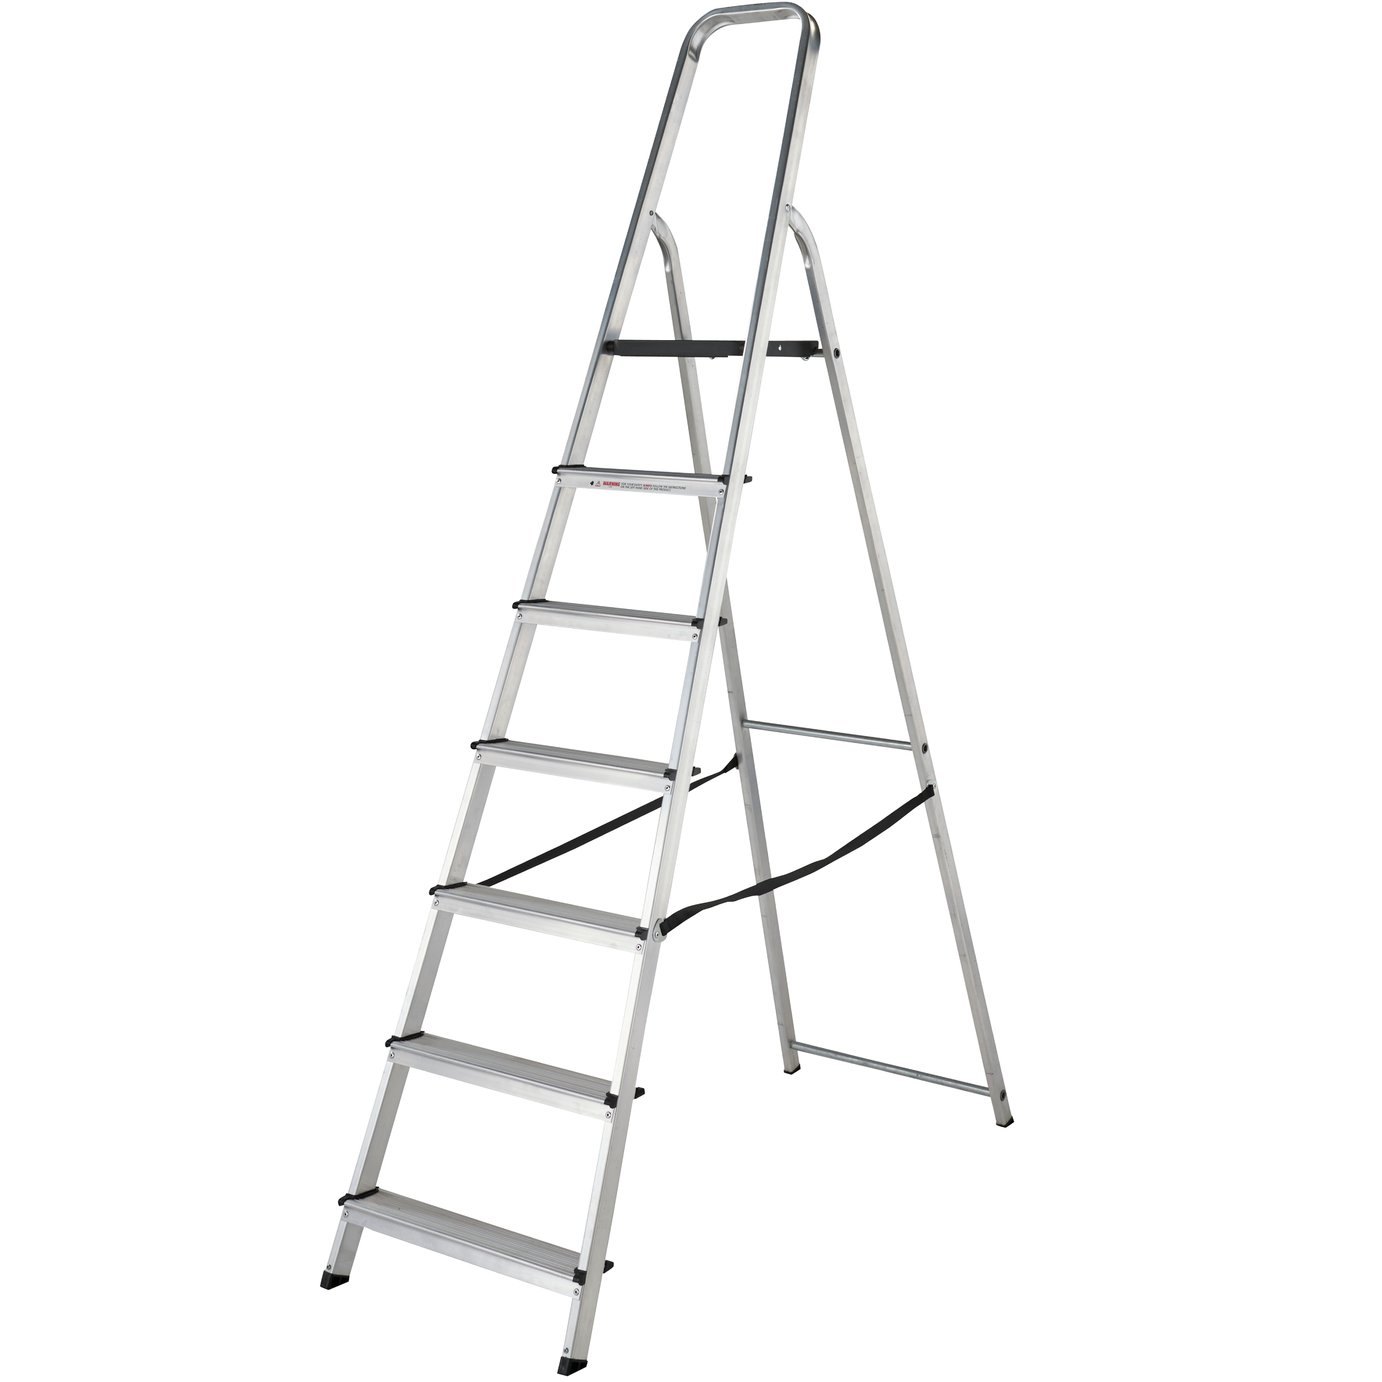 Abru Werner High Handrail Step Ladder Review